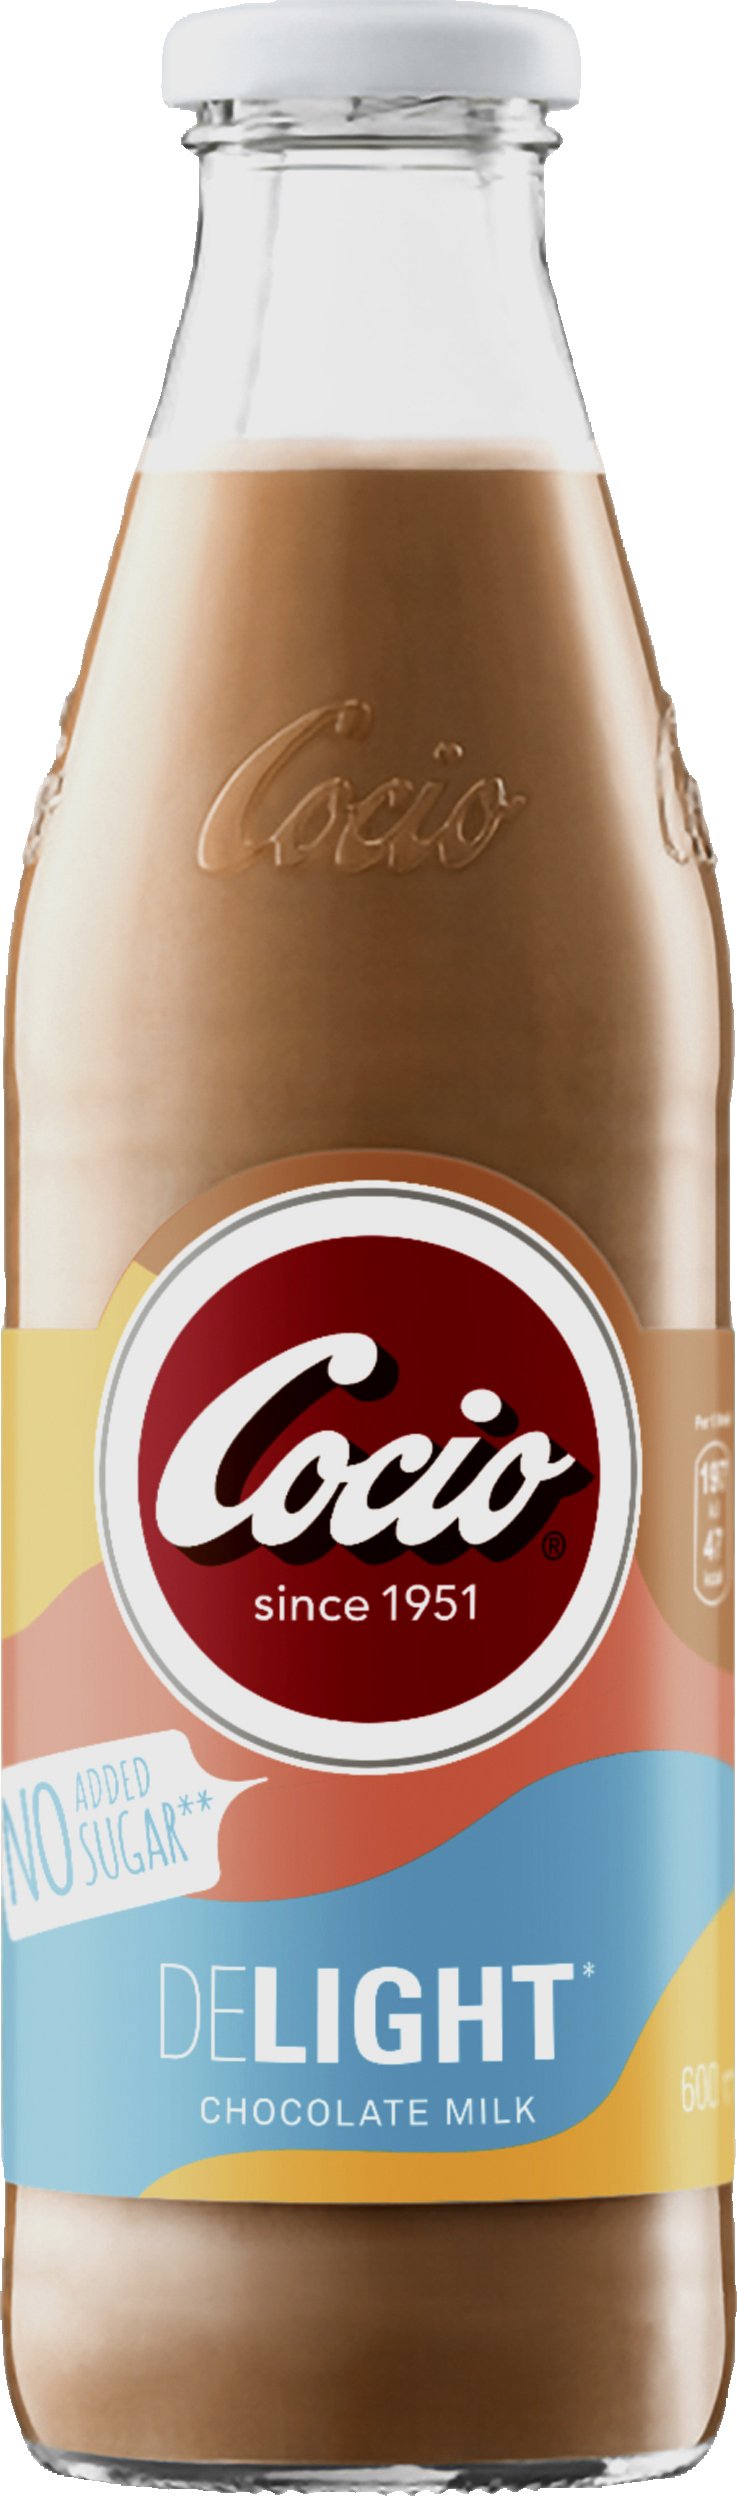 Cocio Delight Chocolate Milk cl. - - VIN MED .DK